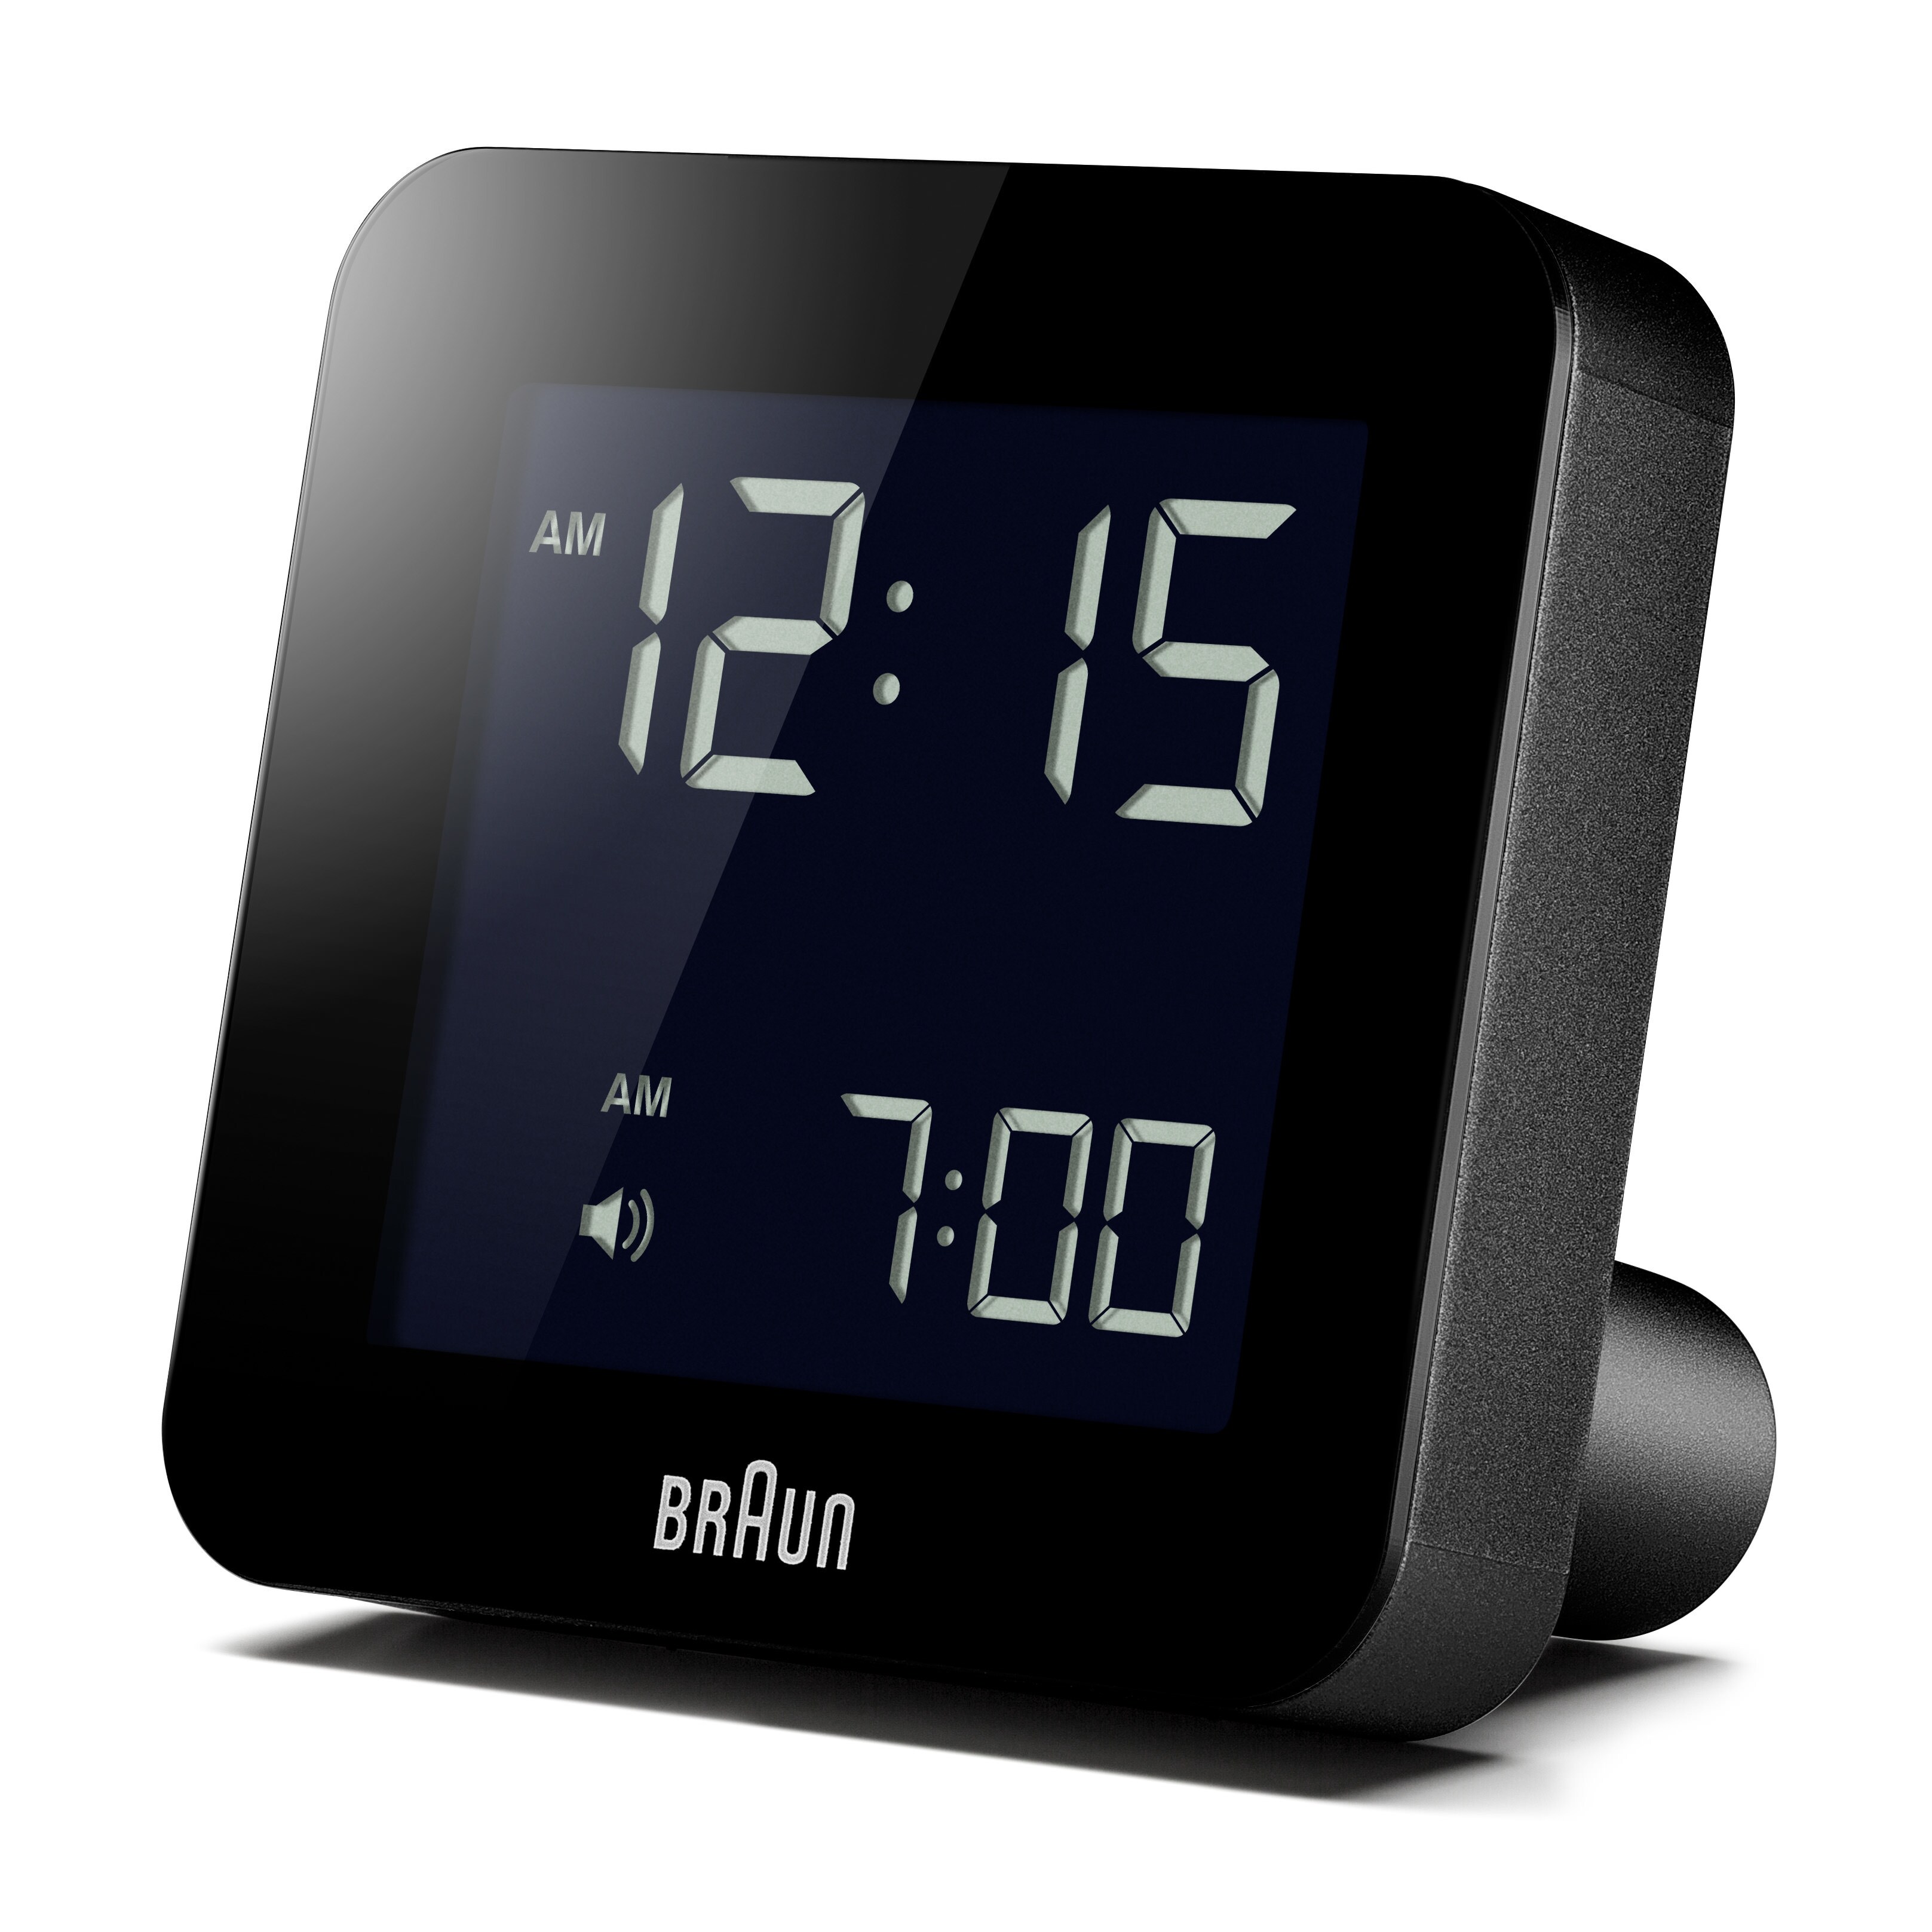 Väckarklocka & Klockradio - Stort utbud till låga priser - Elgiganten